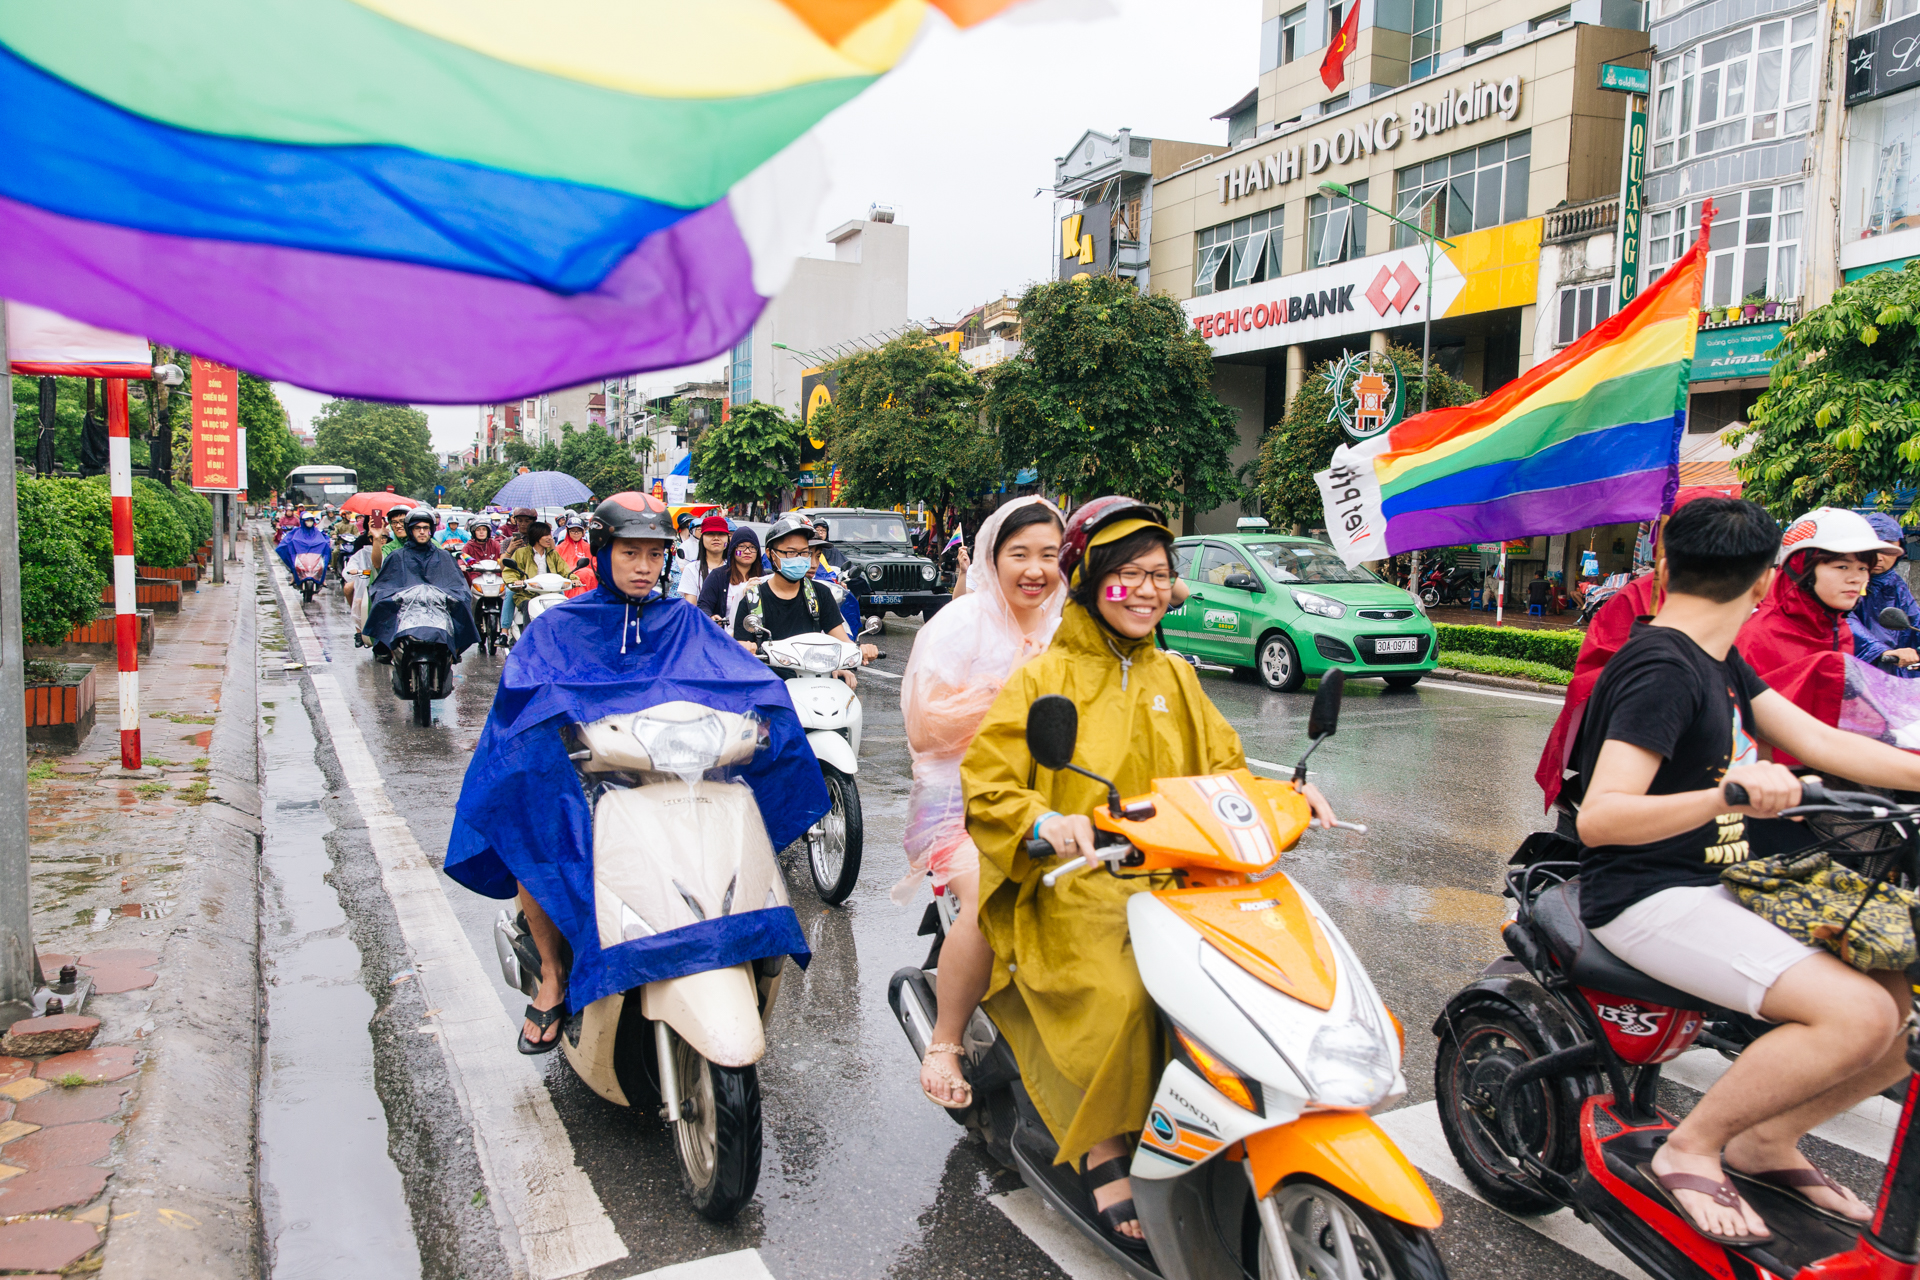 VietPride 2015, Hanoi, Vietnam (2015)